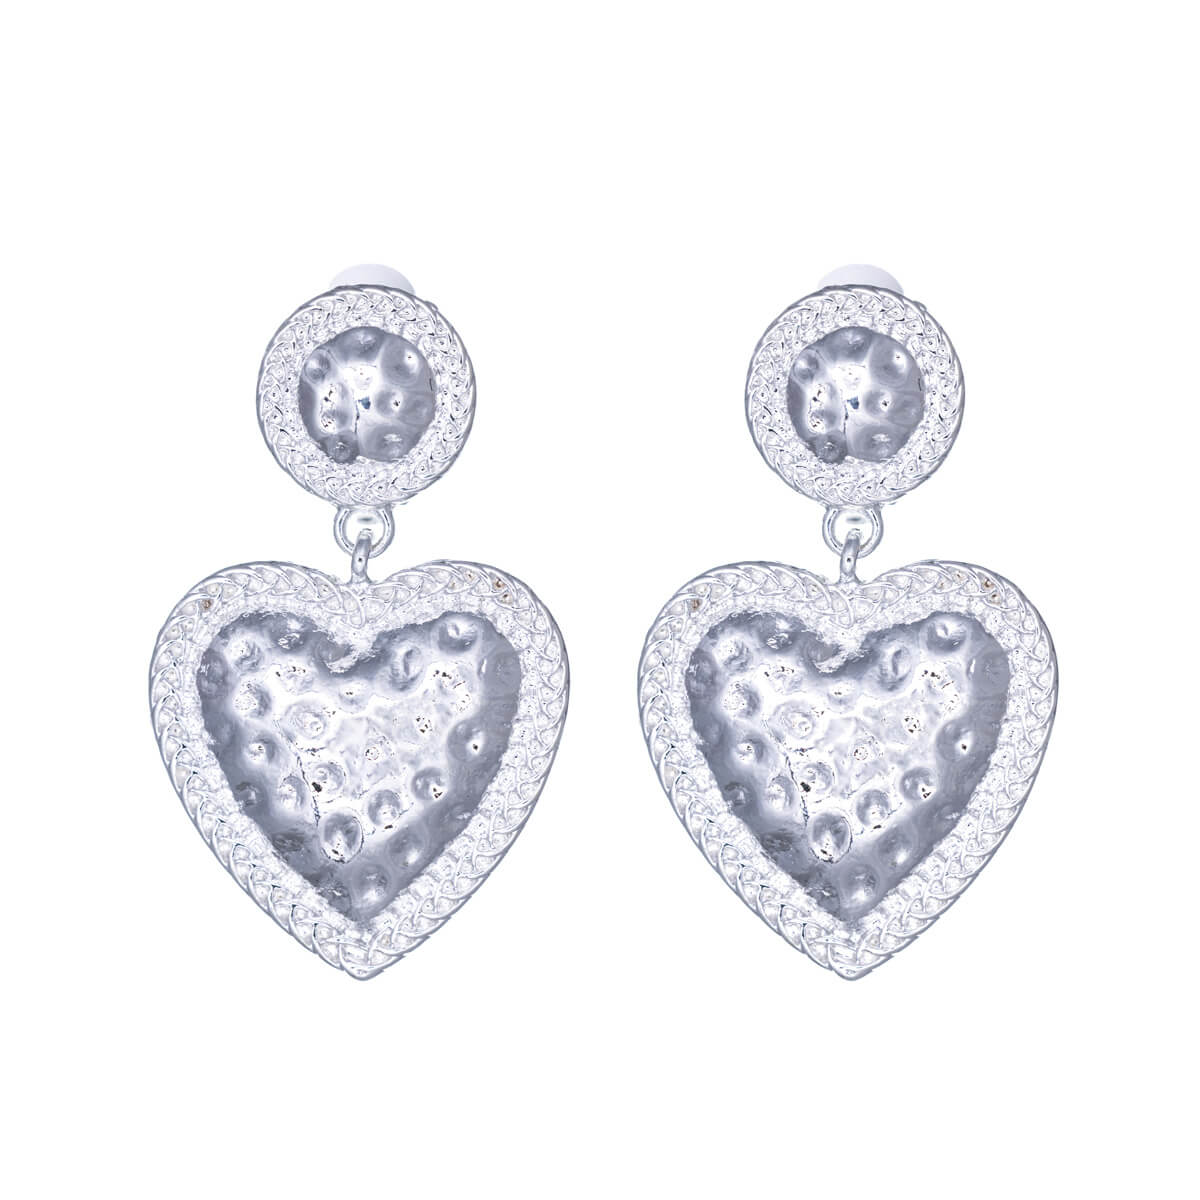 Hanging heart clip-on earrings